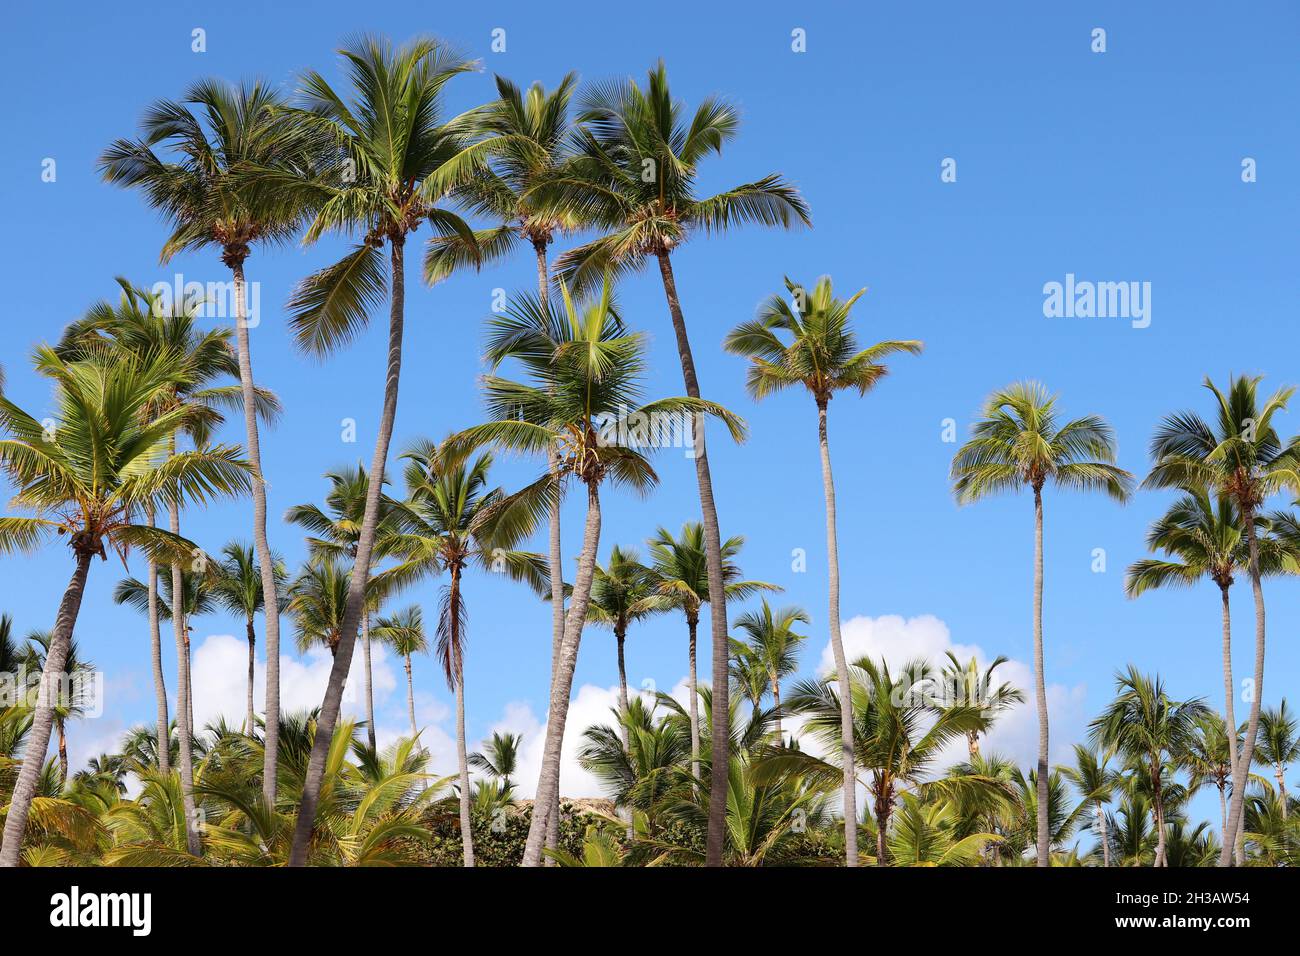 Palmiers à noix de coco sur ciel bleu avec fond de nuages blancs.Plage tropicale, nature paradisiaque Banque D'Images